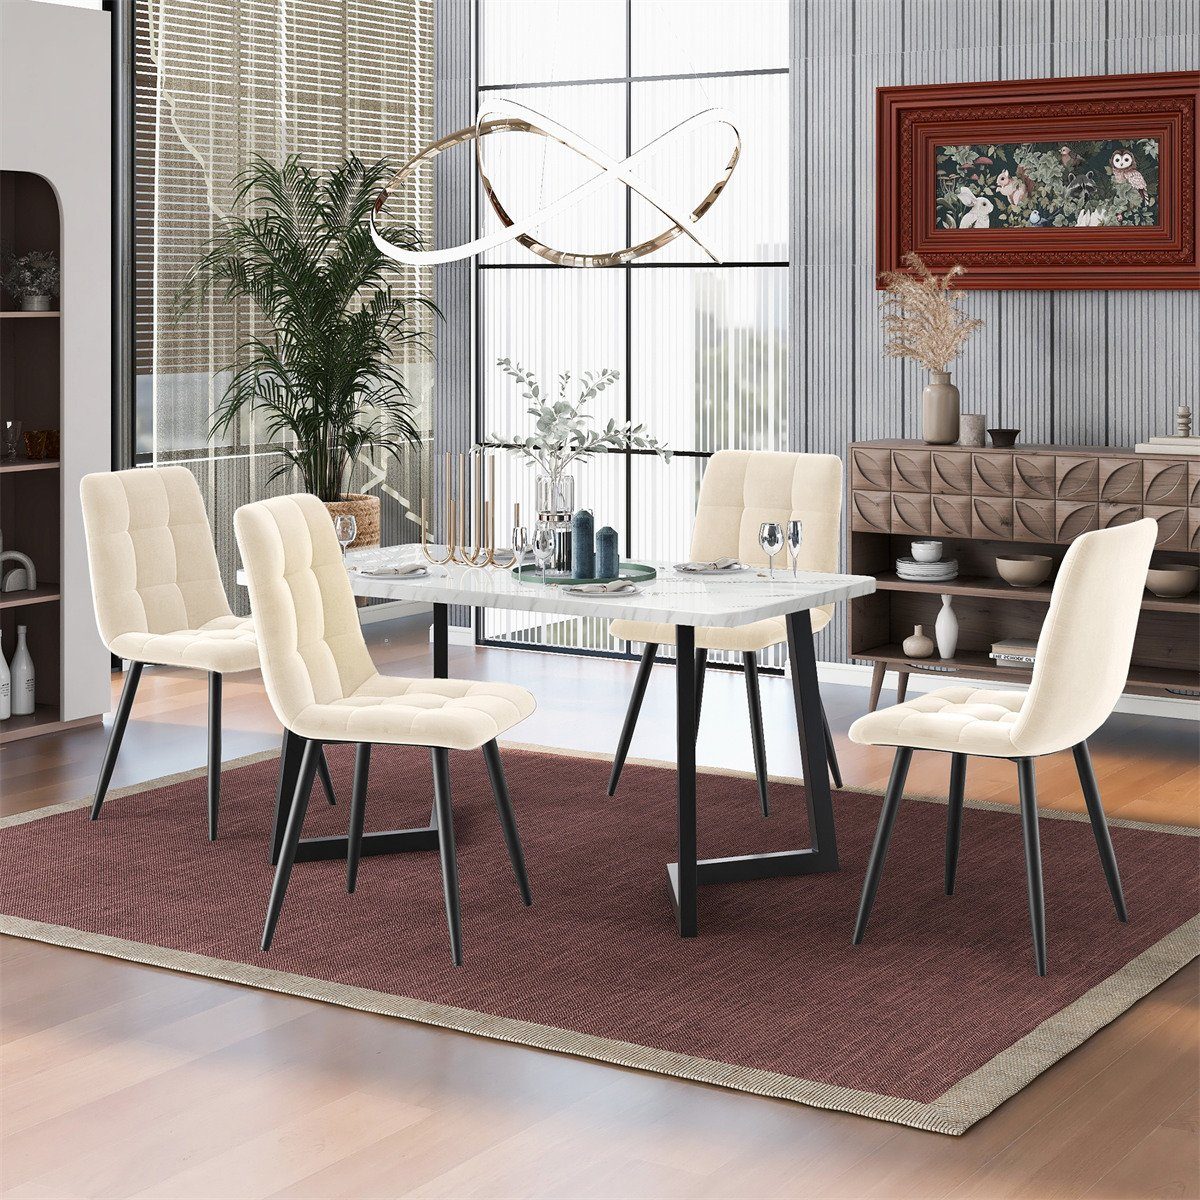 XDeer Esszimmerstuhl 4er Set Esszimmerstühle,Polsterstuhl Küchenstuhl mit Rückenlehne, Sitzfläche aus Samt Gestell aus Metall,Leicht zu montieren Beige